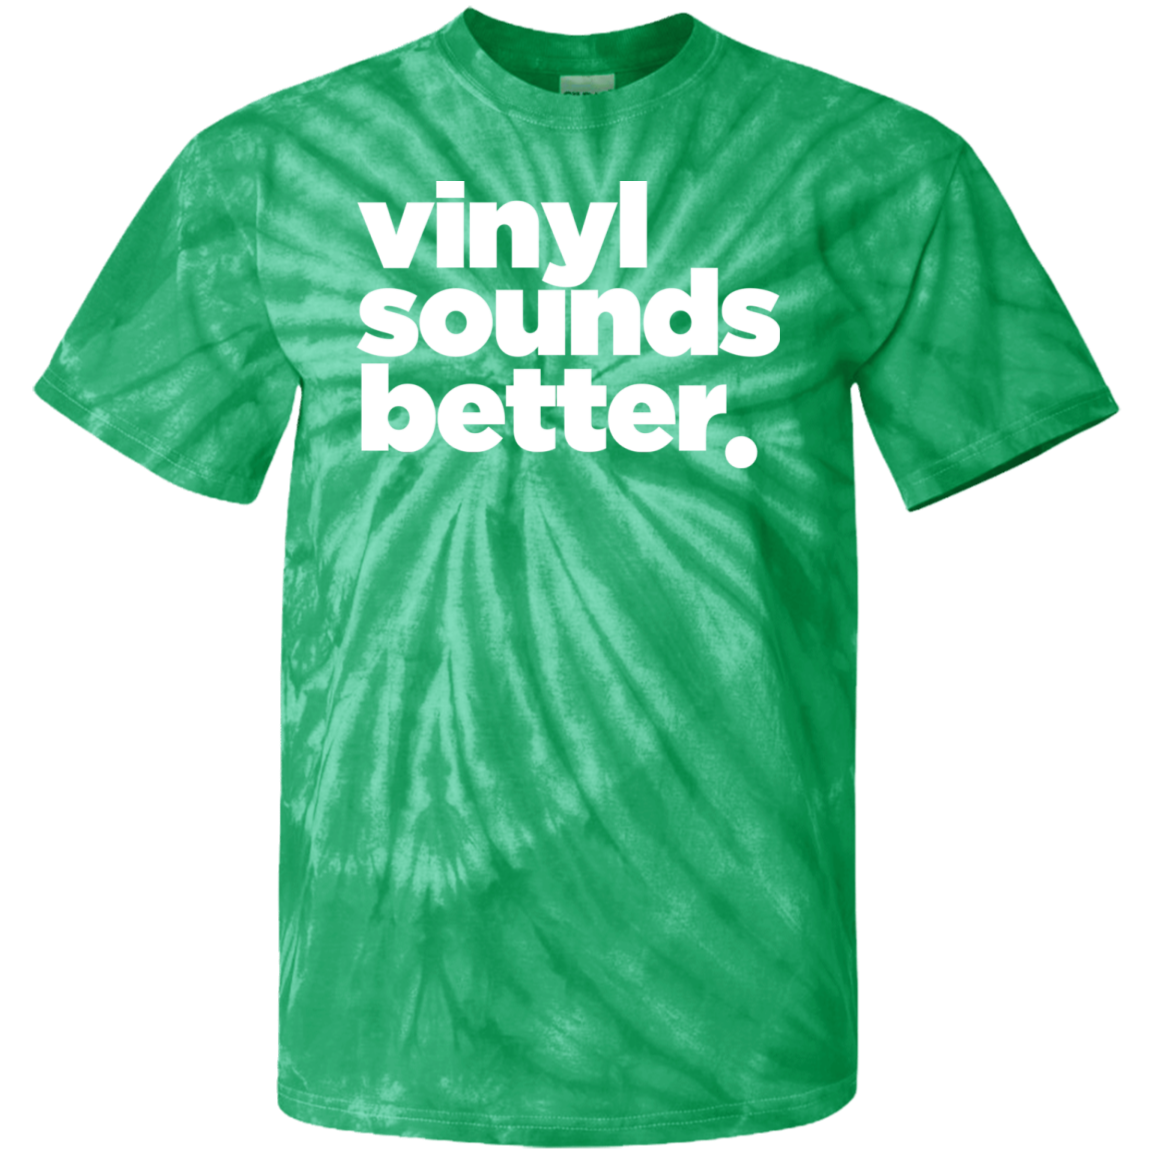 Vinyl Sounds Better Cotton Tie Dye T-Shirt